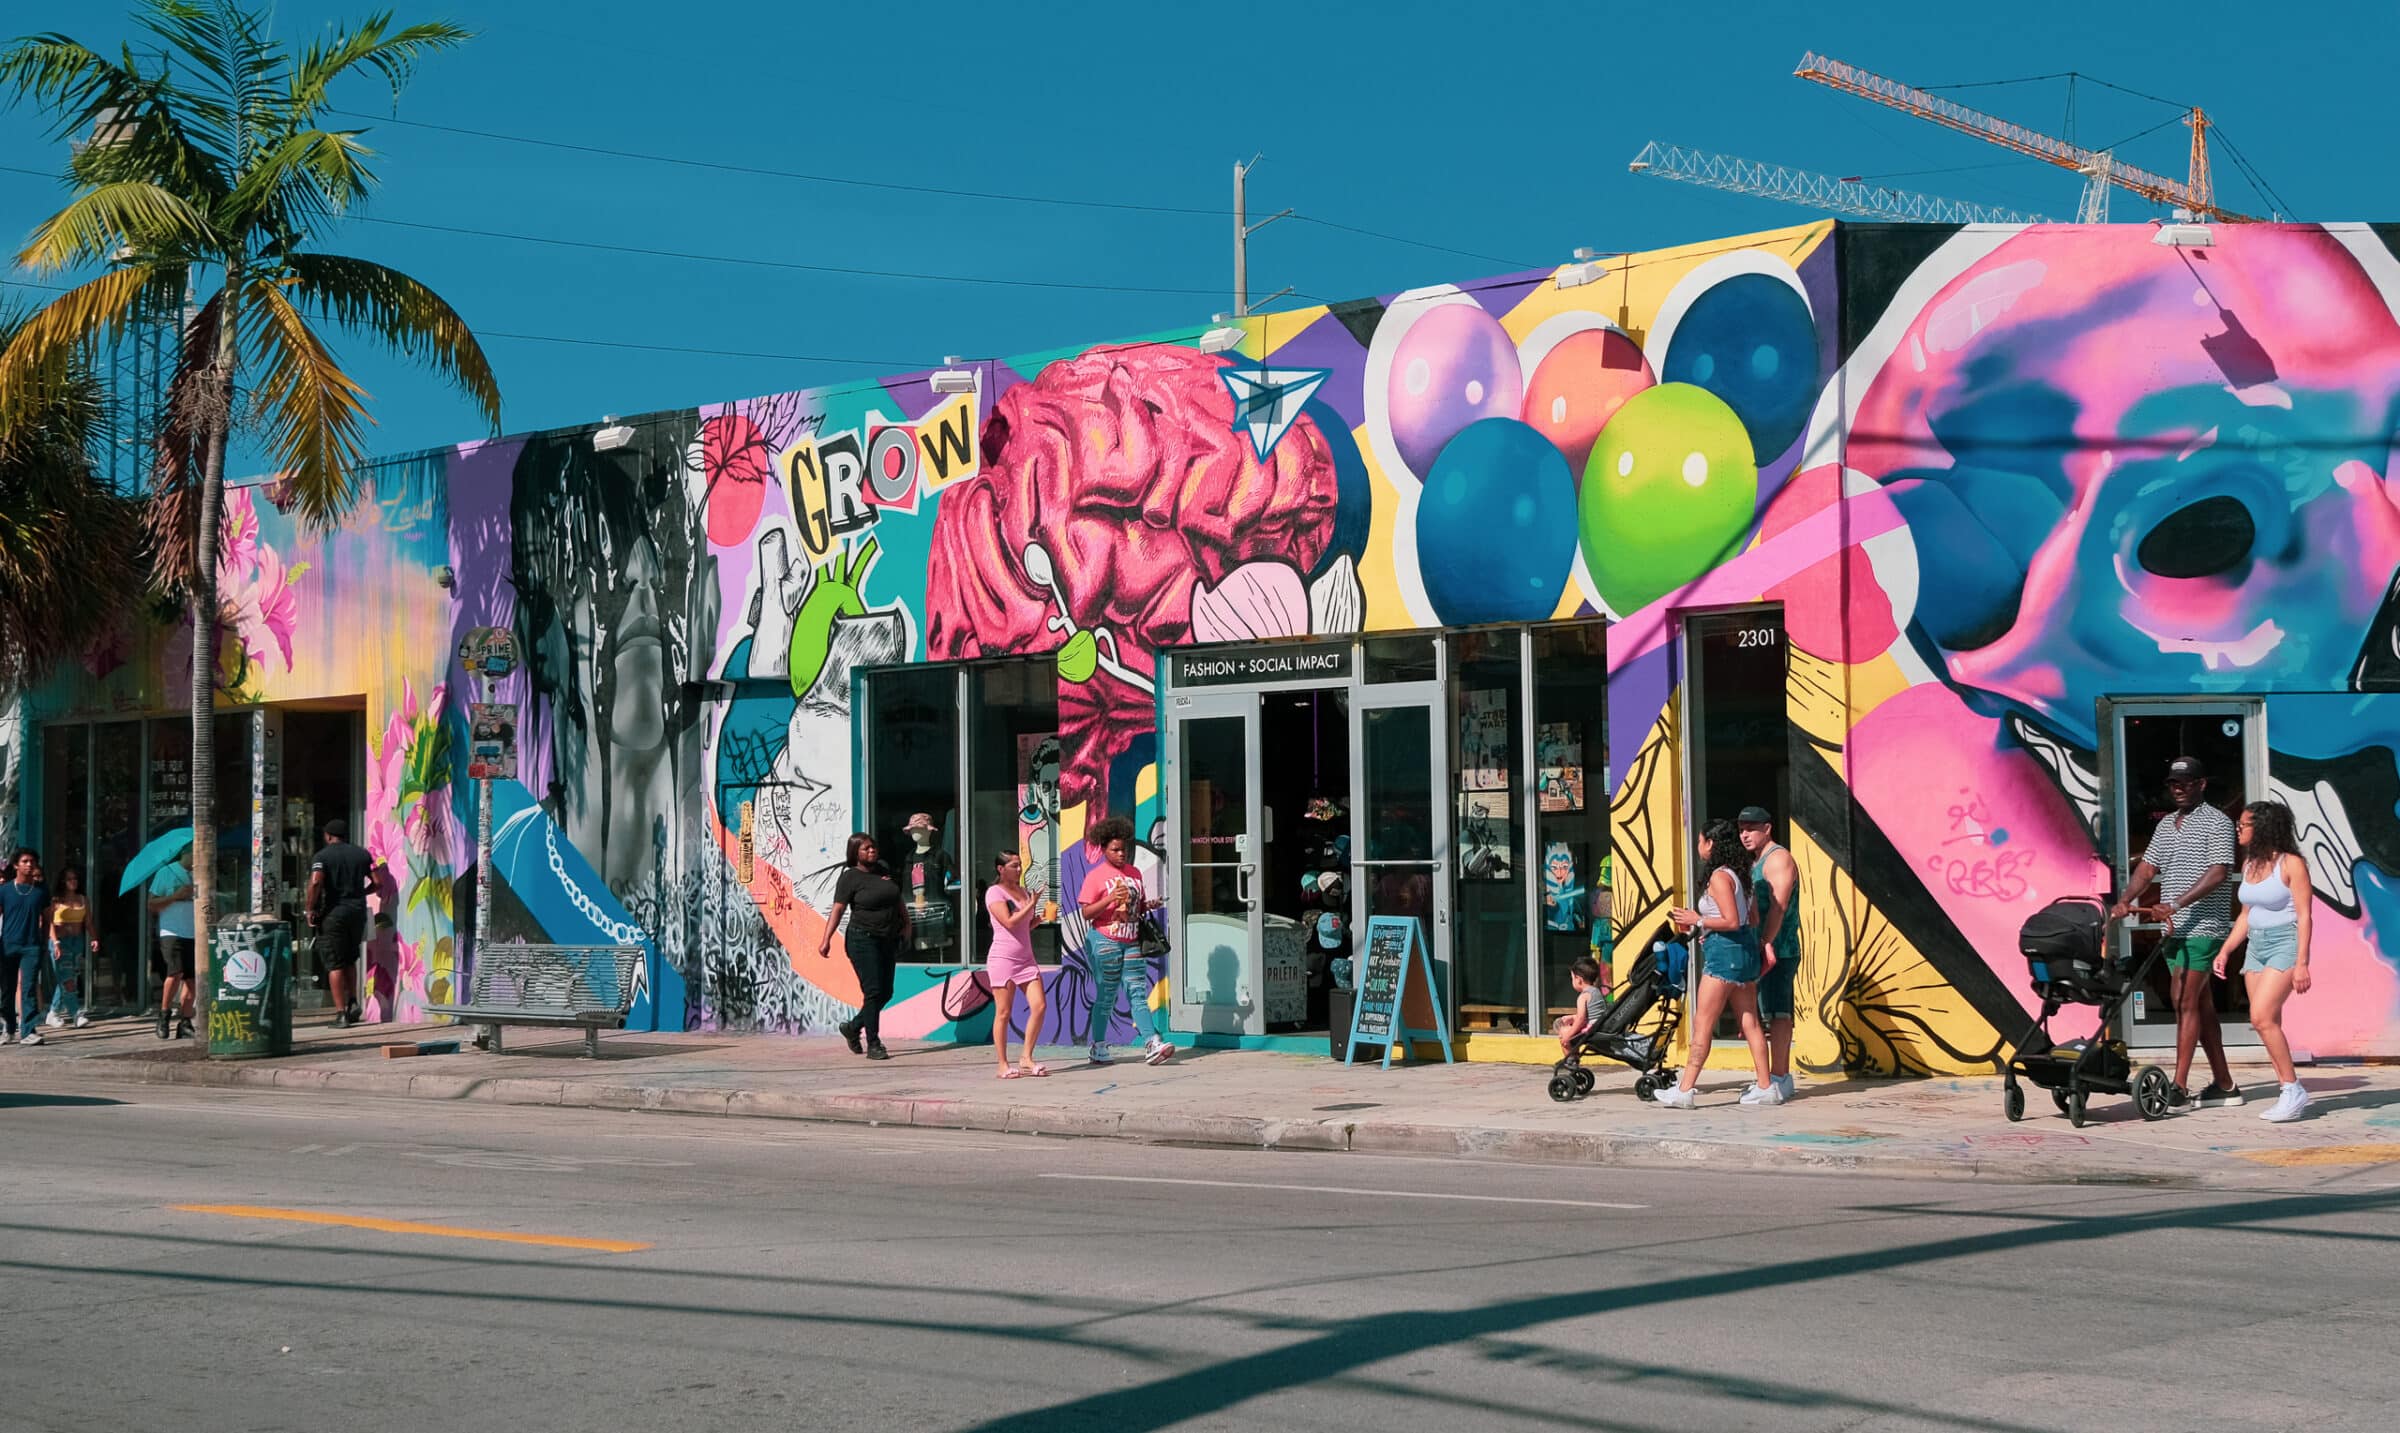 Le strade qui sono tutte splendidamente decorate con Street Art | Wynwood, Miami